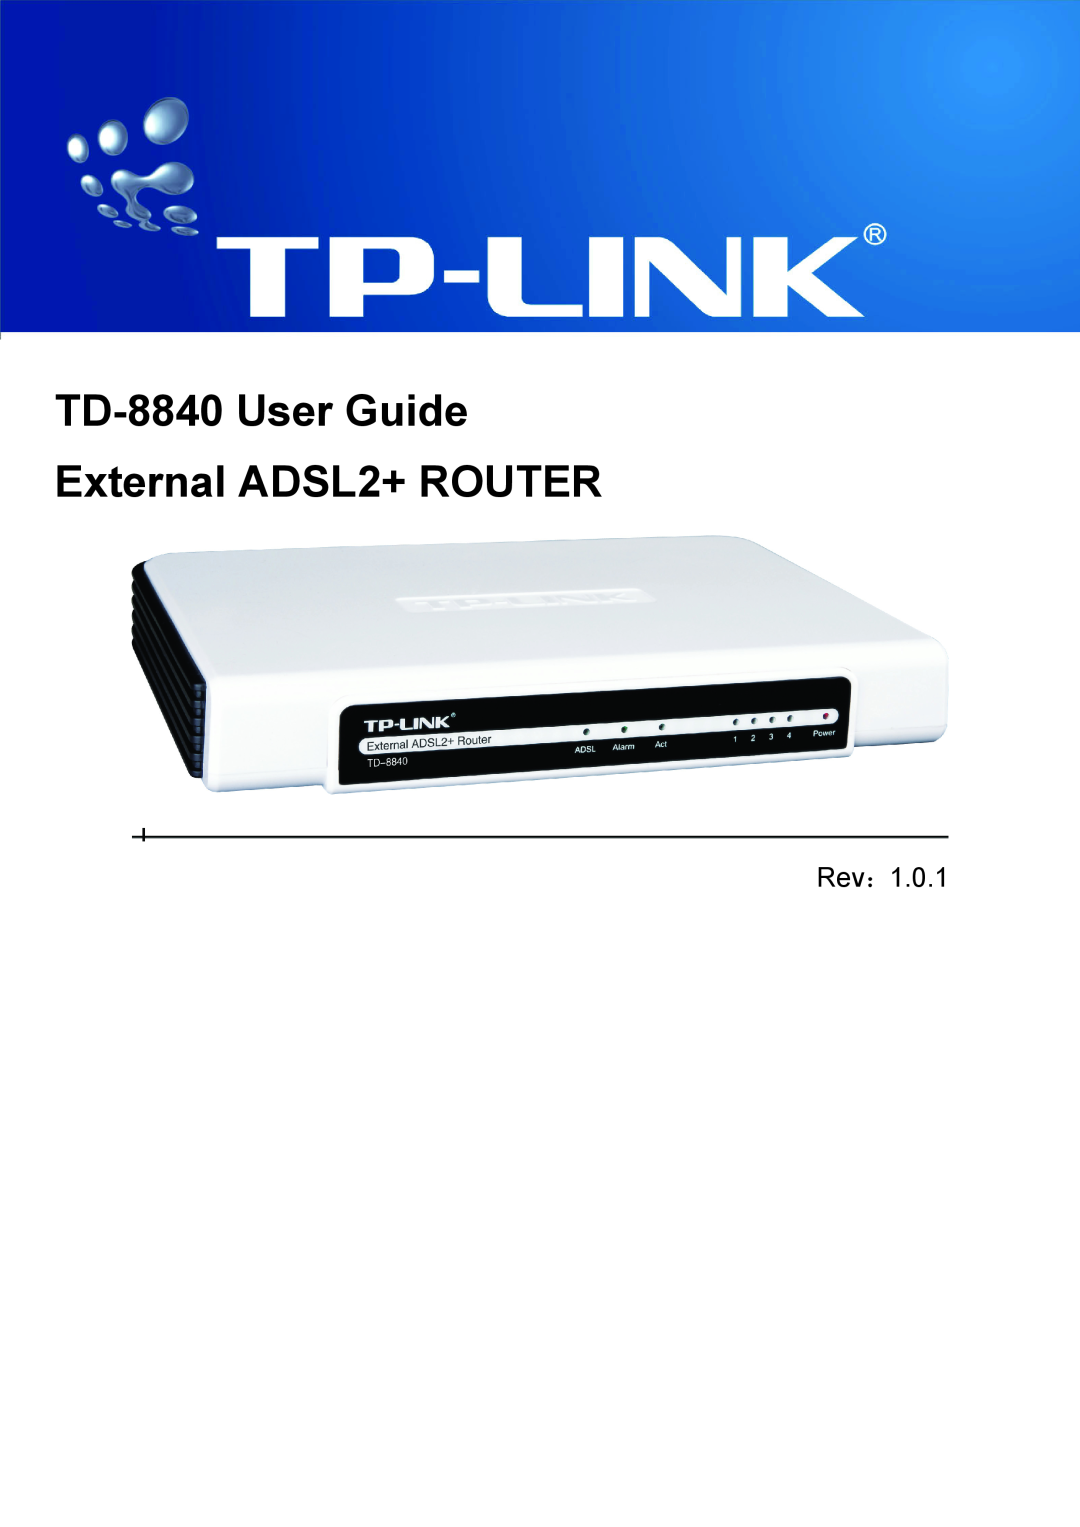 TP-Link manual TD-8840User Guide ADSL2+ Modem Router, Rev, 1910010192 